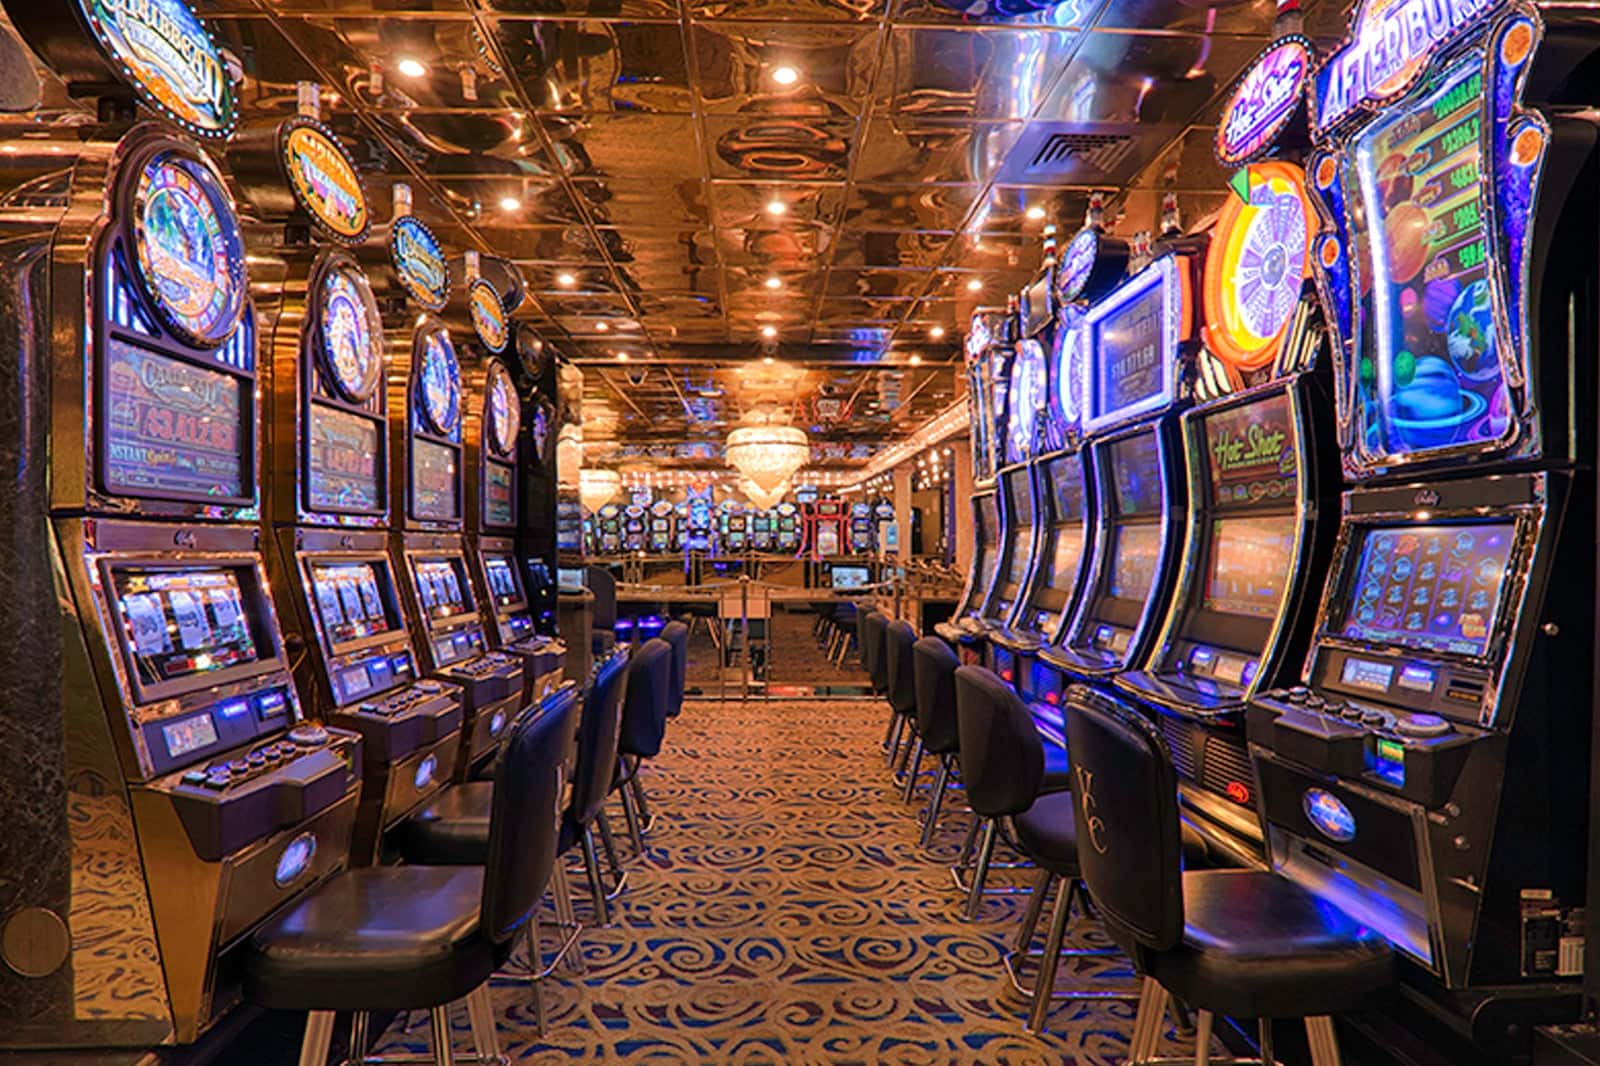 St. pete beach casino cruises 2018